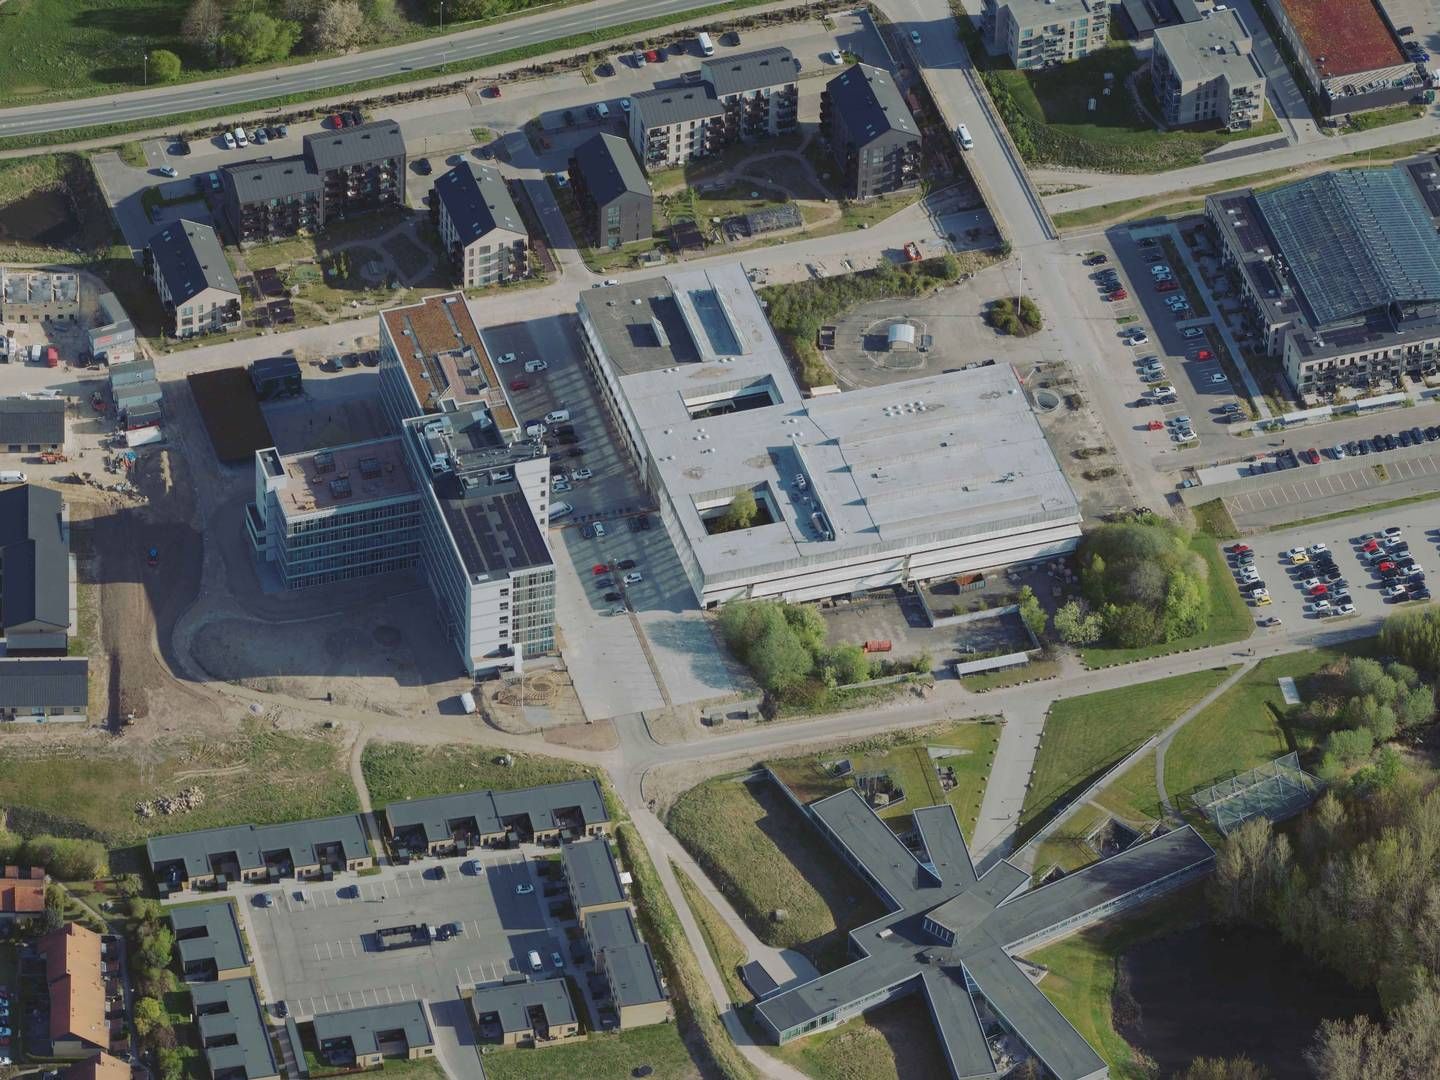 Den over 17.000 kvm store ejendom i midten af billedet er del af den tidligere hospitalsgrund i Helsingør, der i 2018 blev solgt af statens ejendomsselskab Freja. | Foto: Styrelsen for Dataforsyning og Infrastruktur